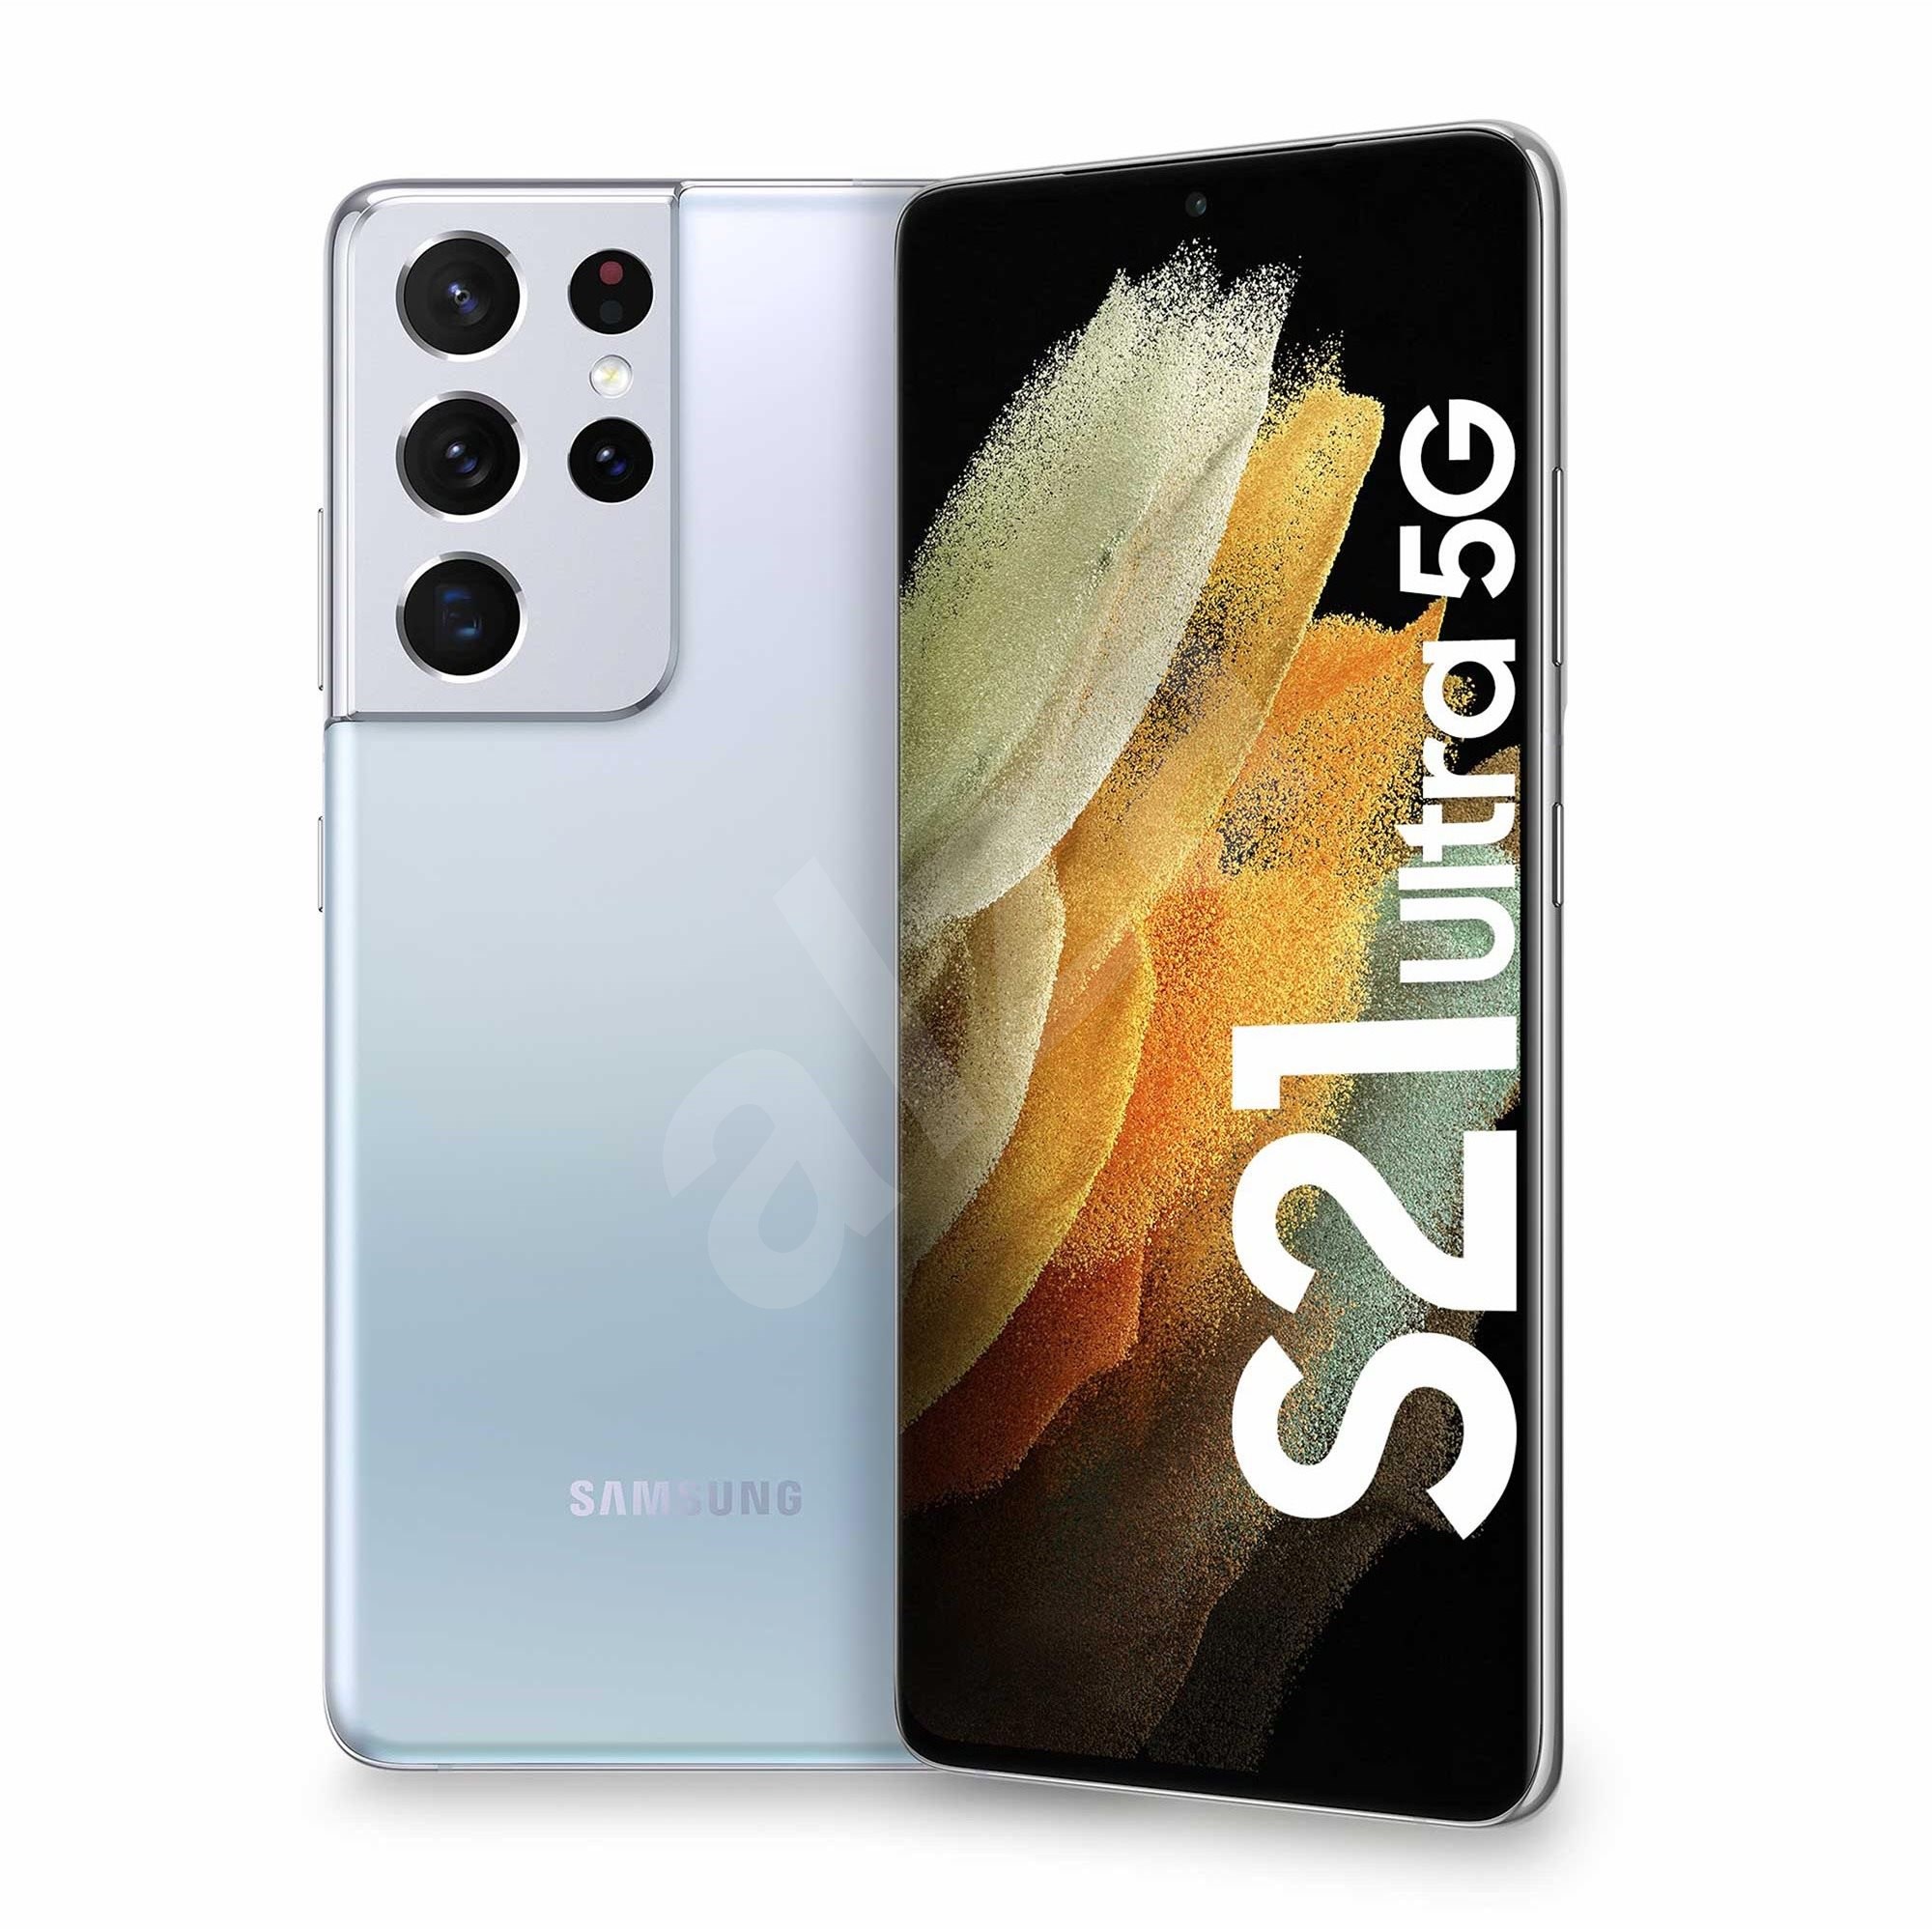 Samsung Galaxy S21 Ultra 5G 128GB stříbrná - Mobilní telefon | Alza.cz